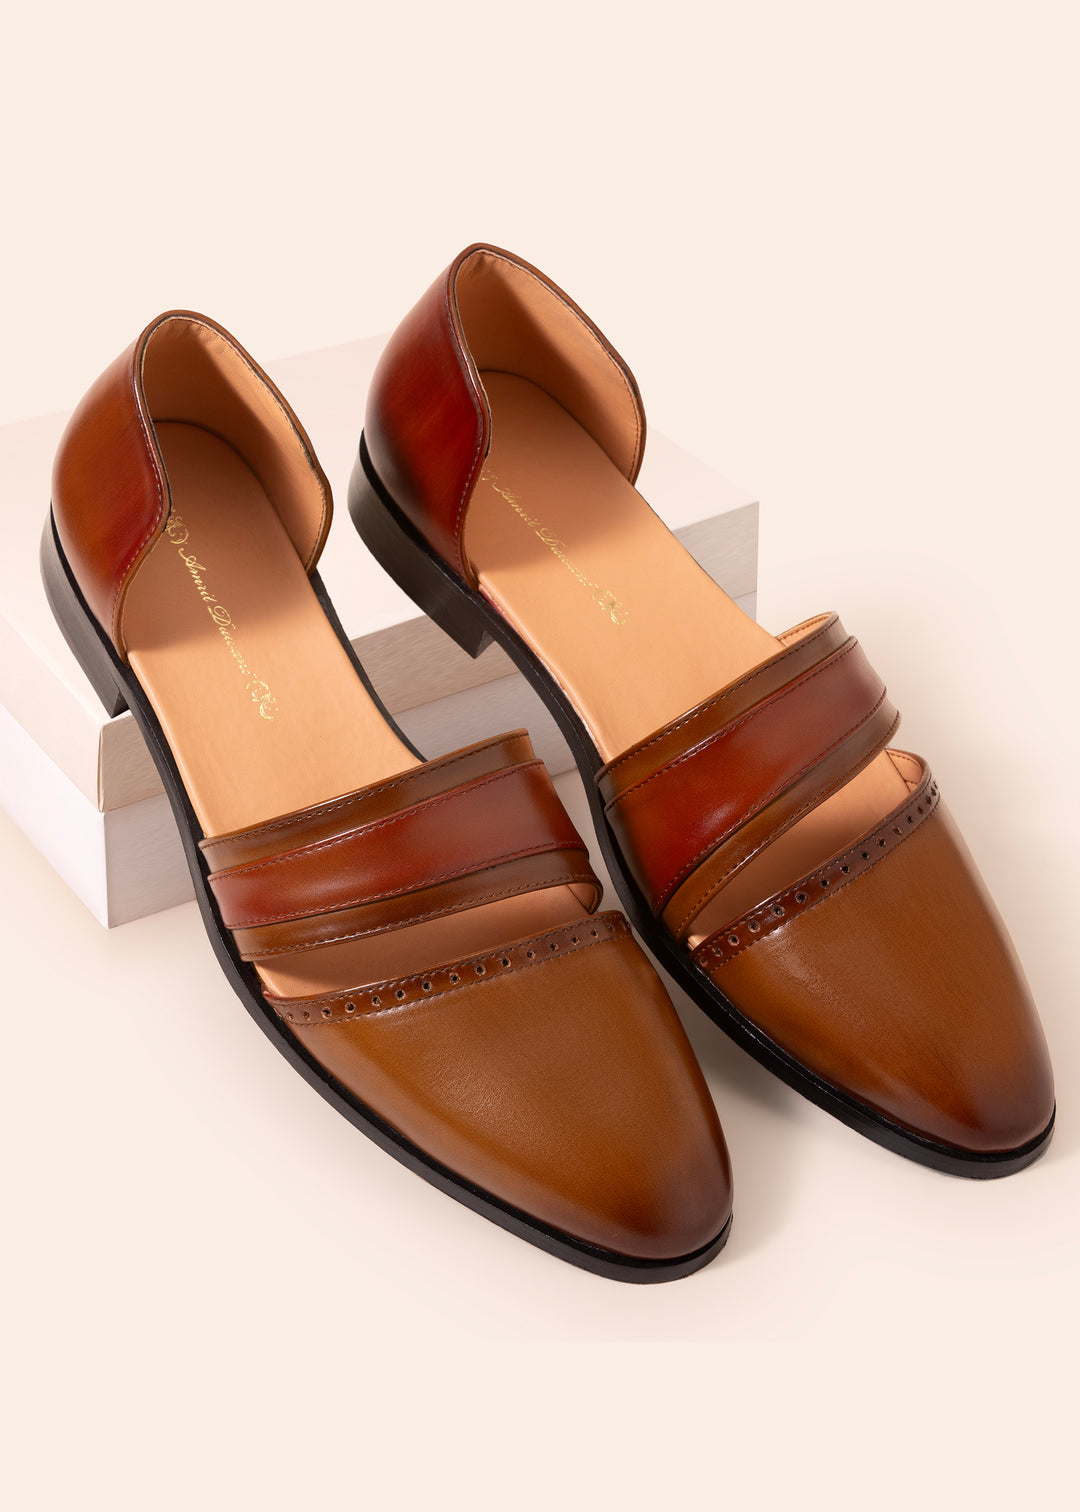 Tan Brown Sandals